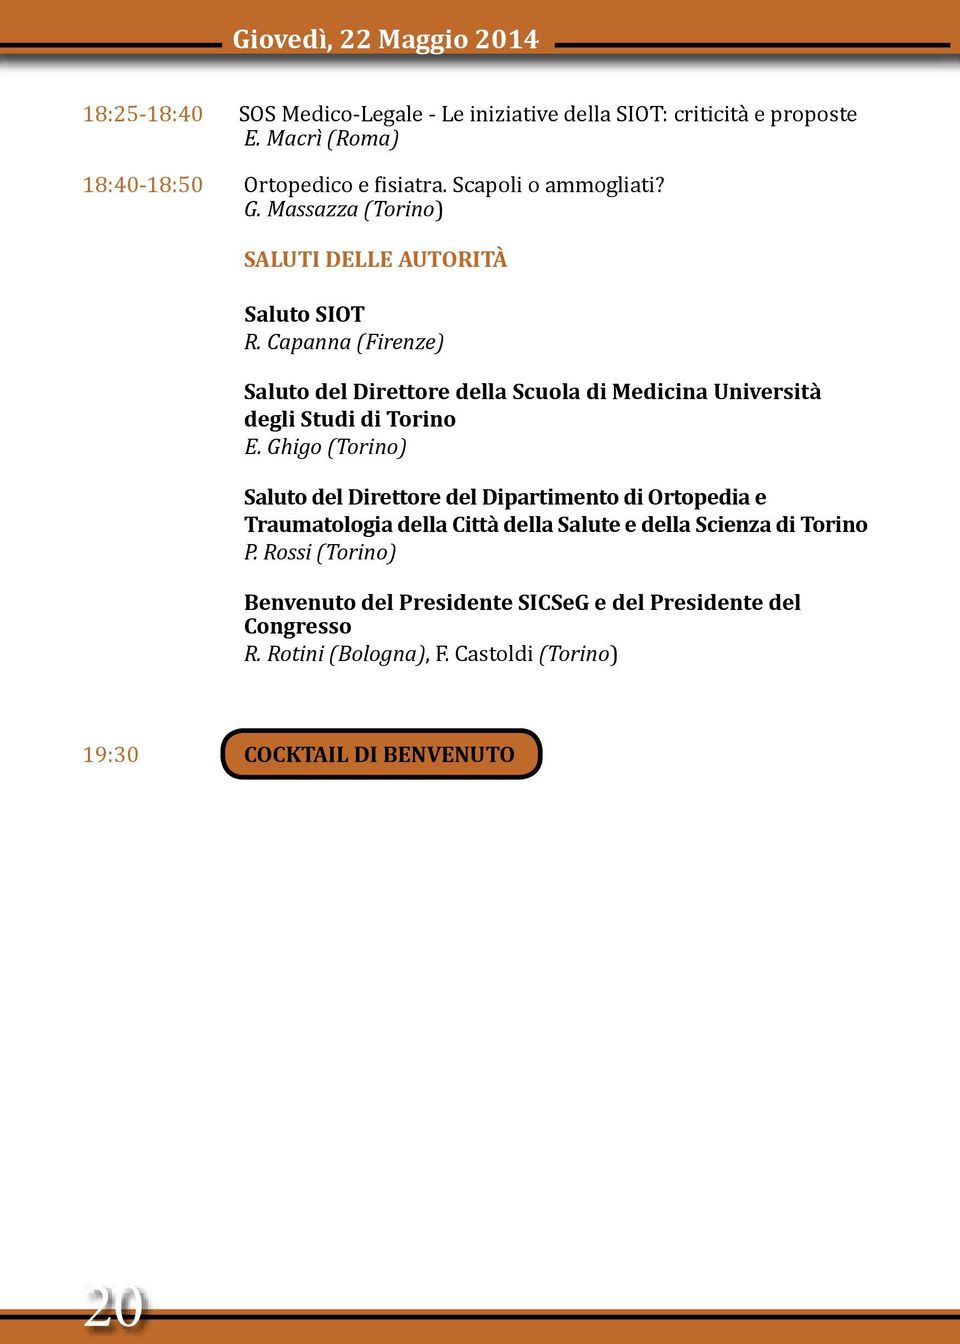 Capanna (Firenze) Saluto del Direttore della Scuola di Medicina Università degli Studi di Torino E.